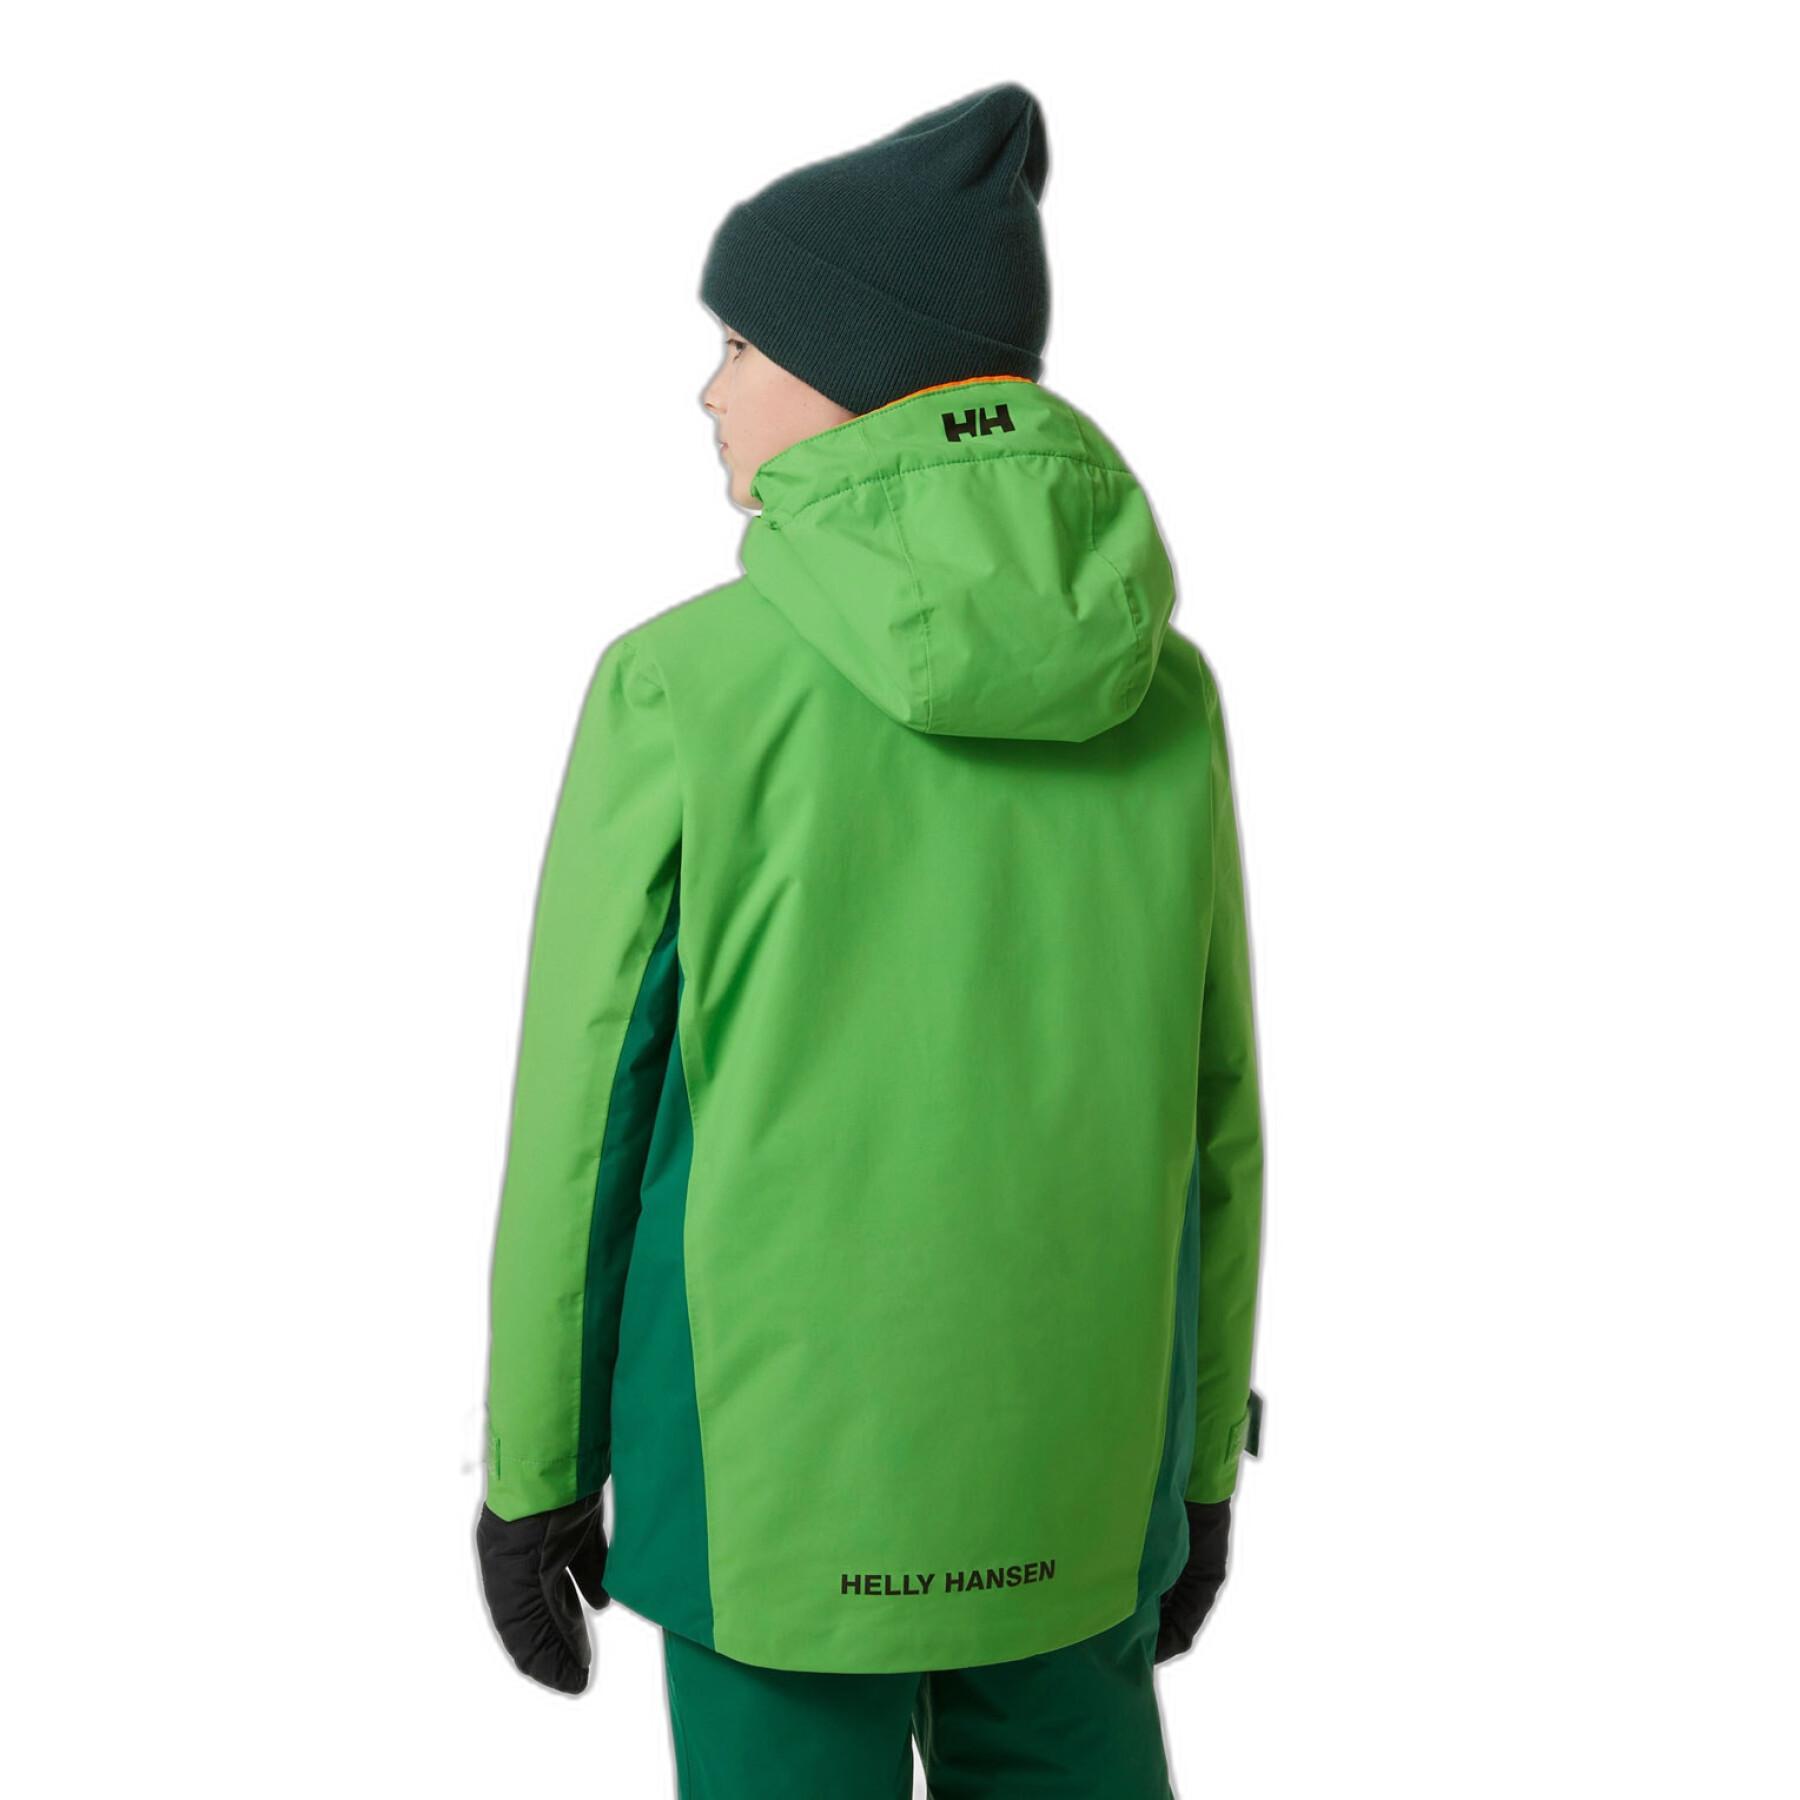 Children's ski jacket Helly Hansen Level